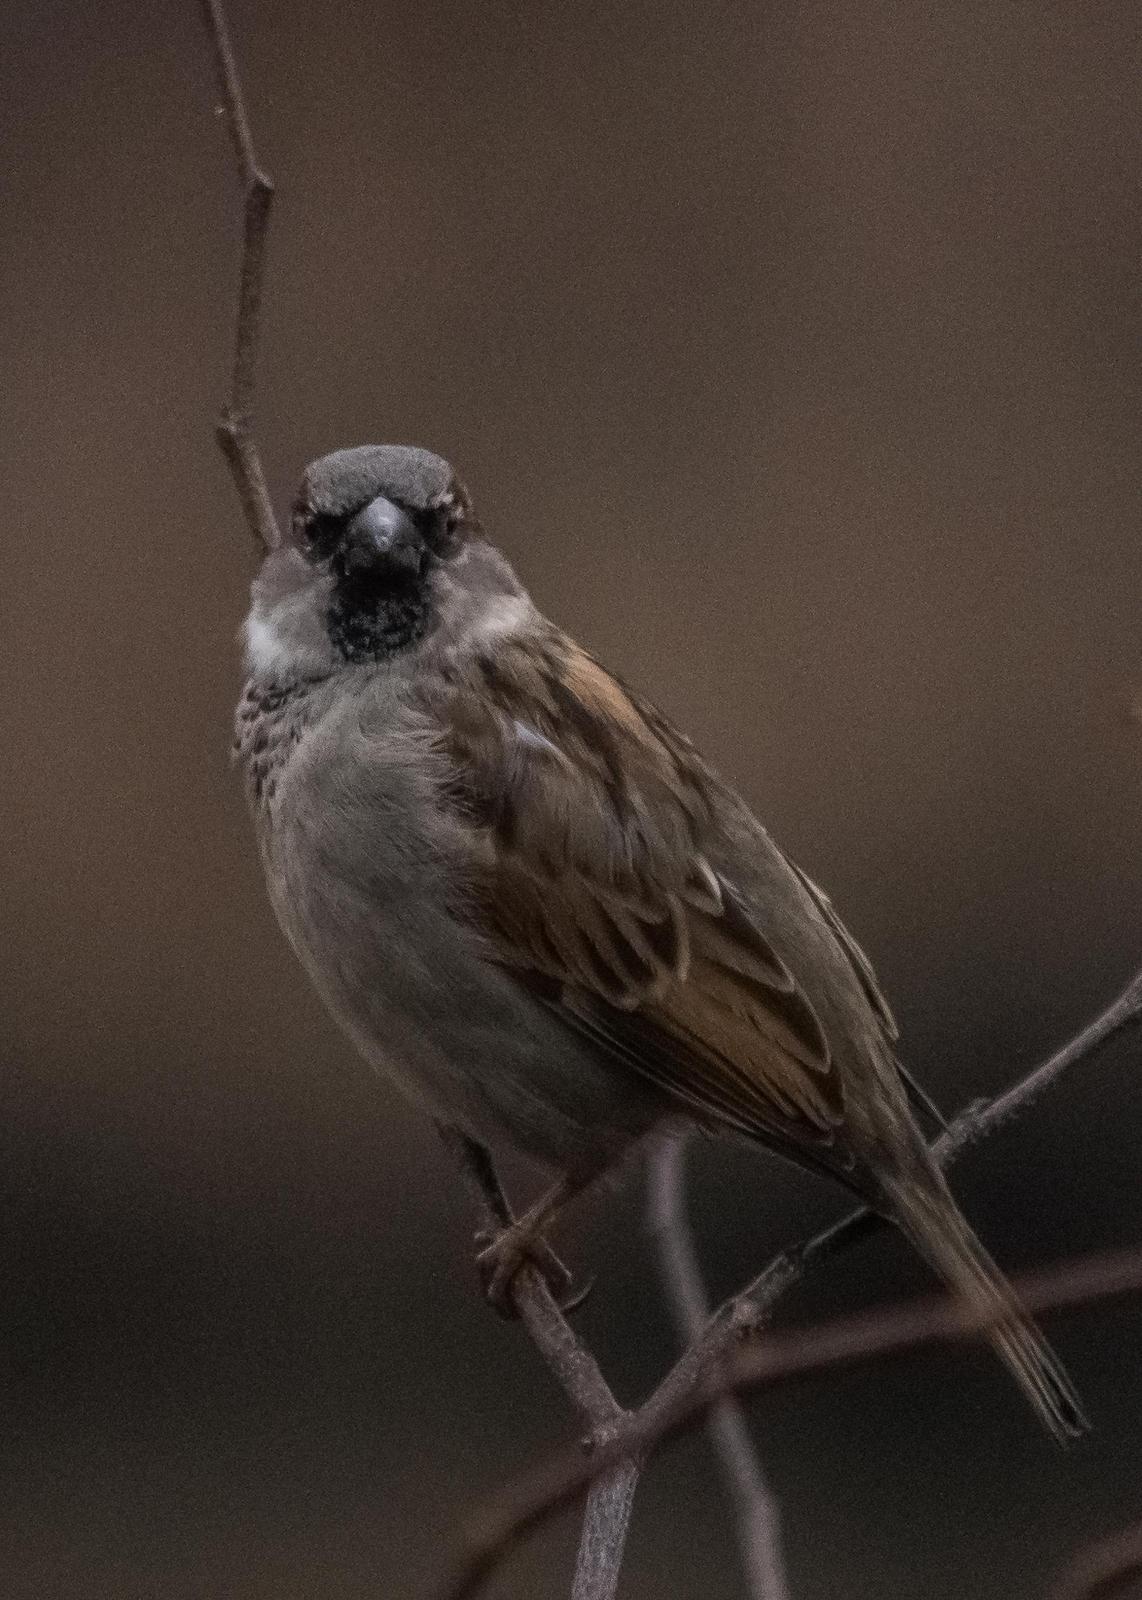 House Sparrow Photo by Keshava Mysore